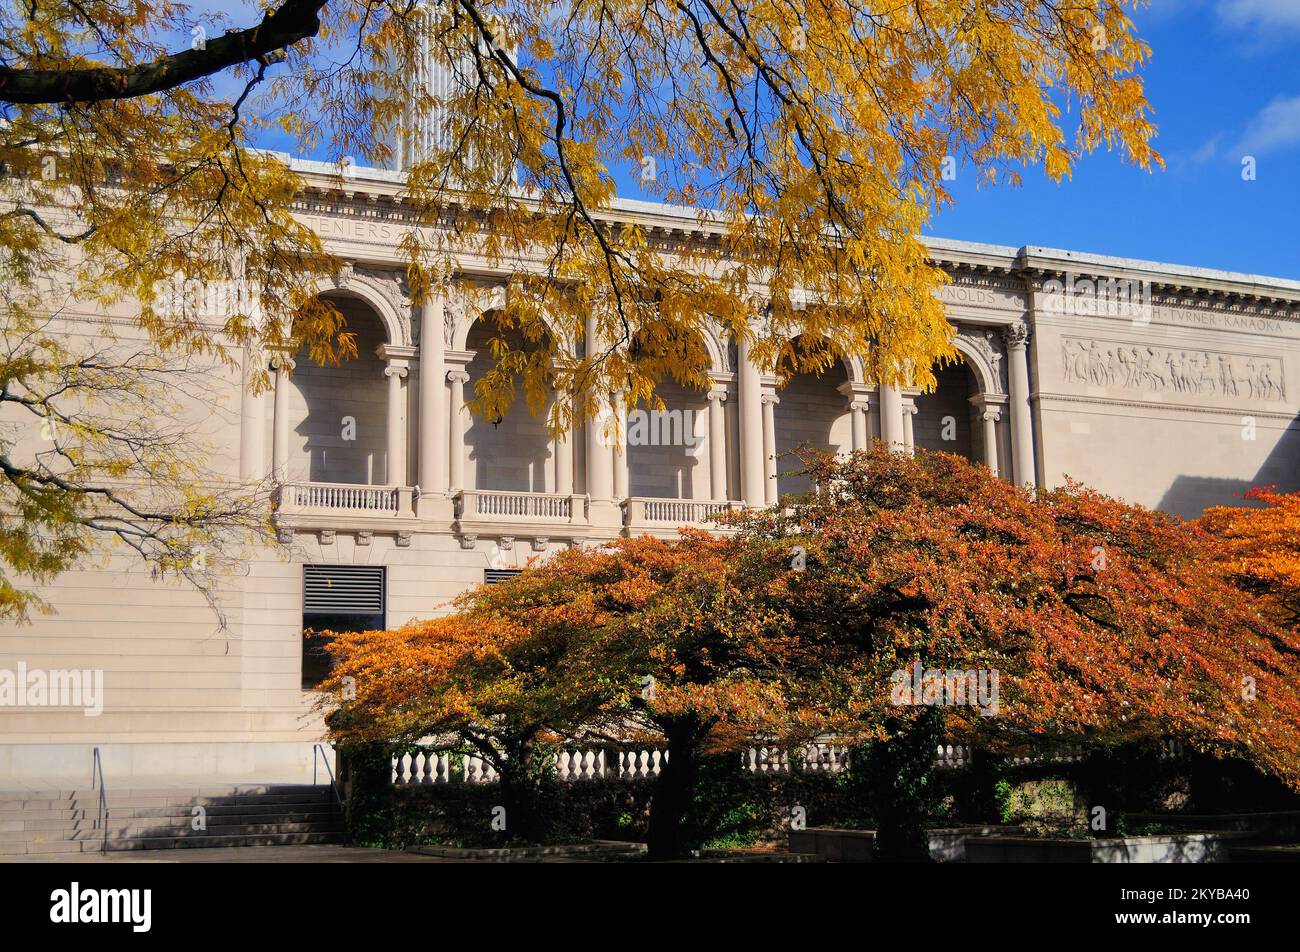 L'automne annonce sa présence à Chicago alors que les feuilles deviennent colorées dans le jardin sud de l'Art Institute of Chicago. Banque D'Images